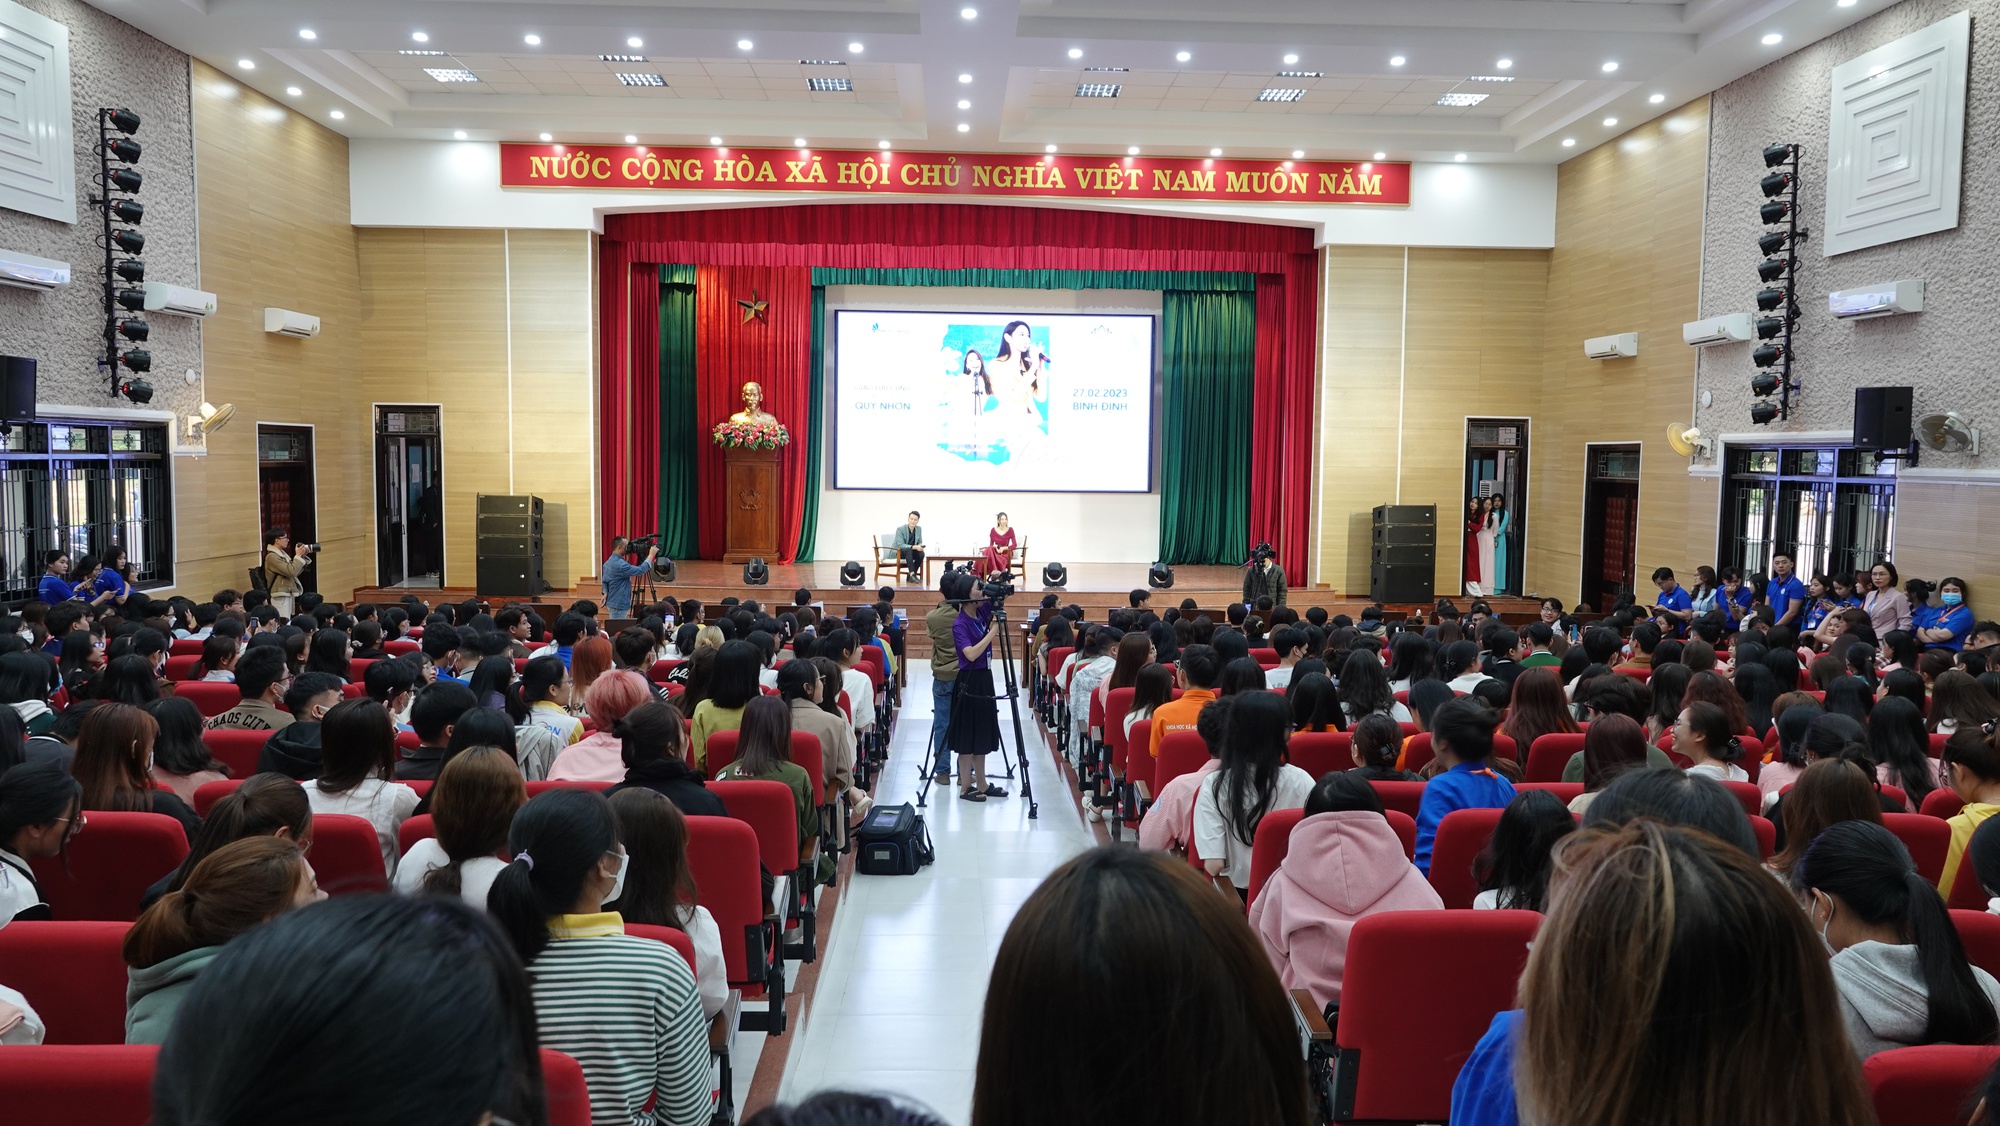 Hoa hậu Thủy Tiên chia sẻ kinh nghiệm học ngoại ngữ tại ĐH Quy Nhơn - Ảnh 1.